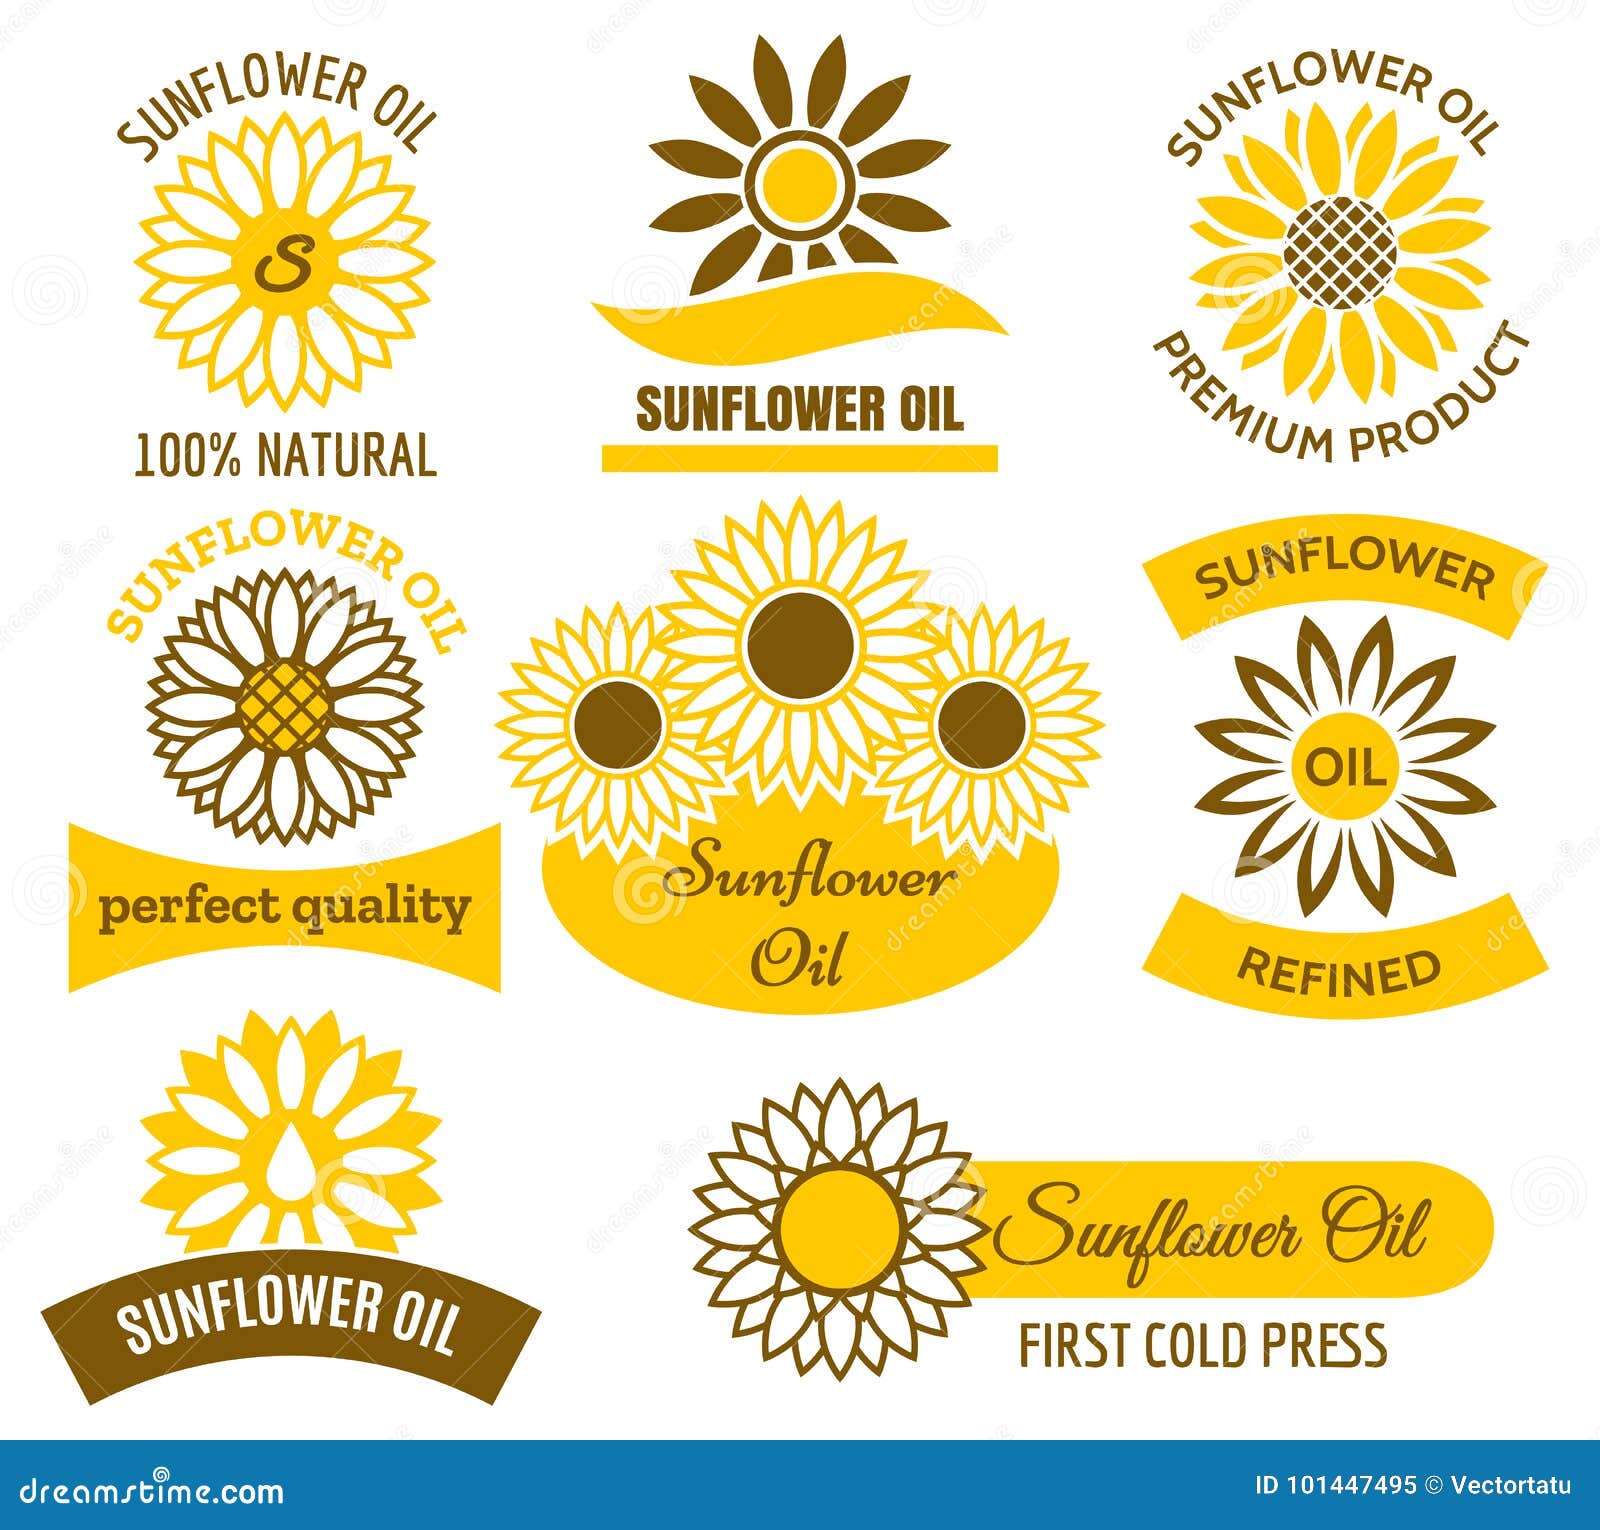 Sunflower oil logo set stock vector. Illustration of element - 101447495